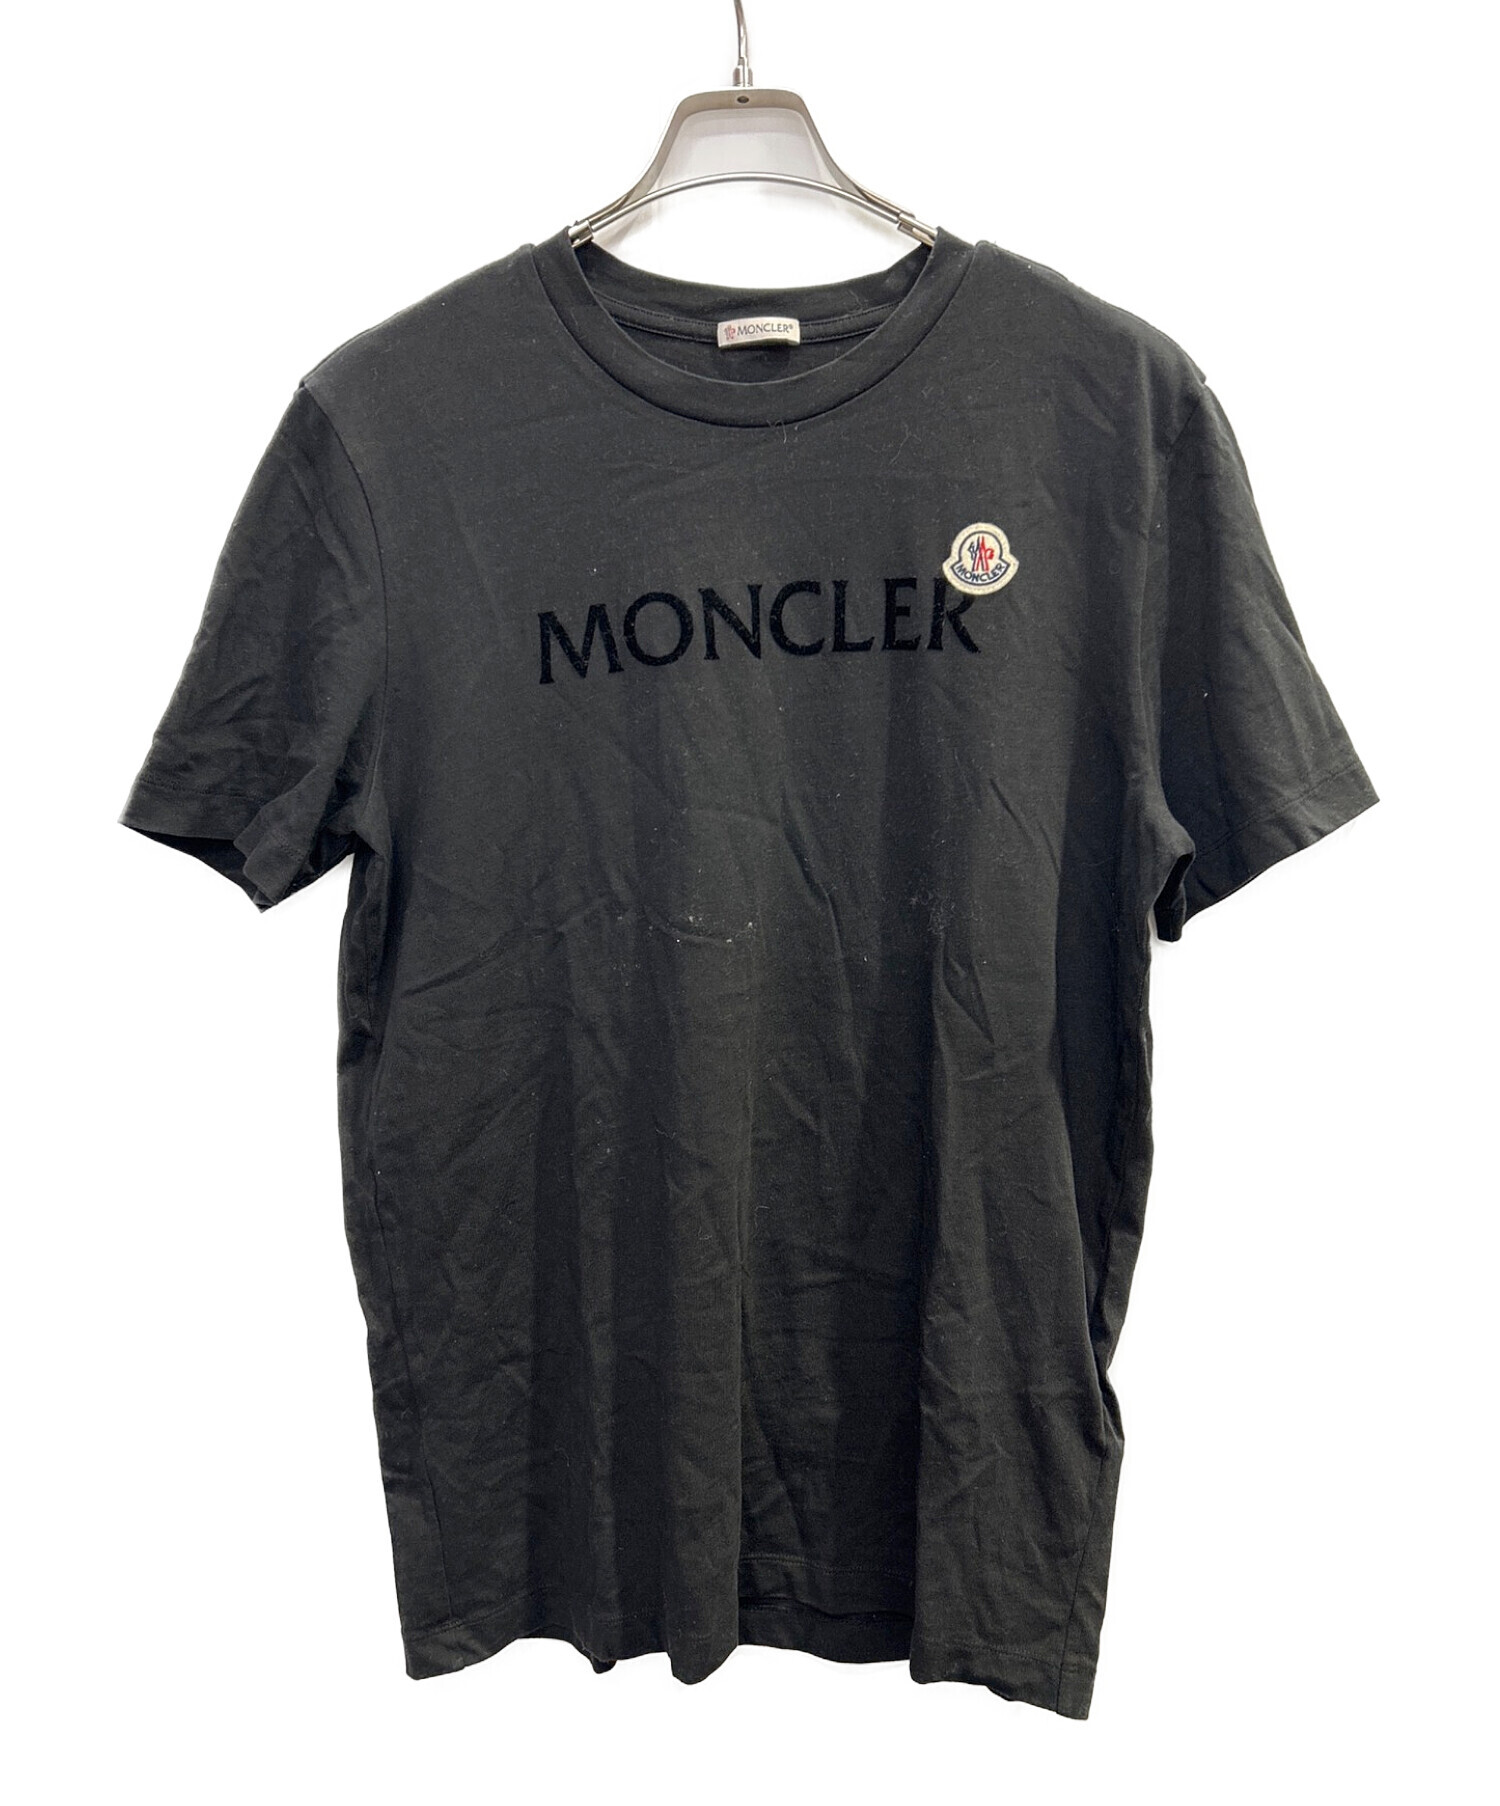 MONCLER (モンクレール) ロゴカットソー ブラック サイズ:M